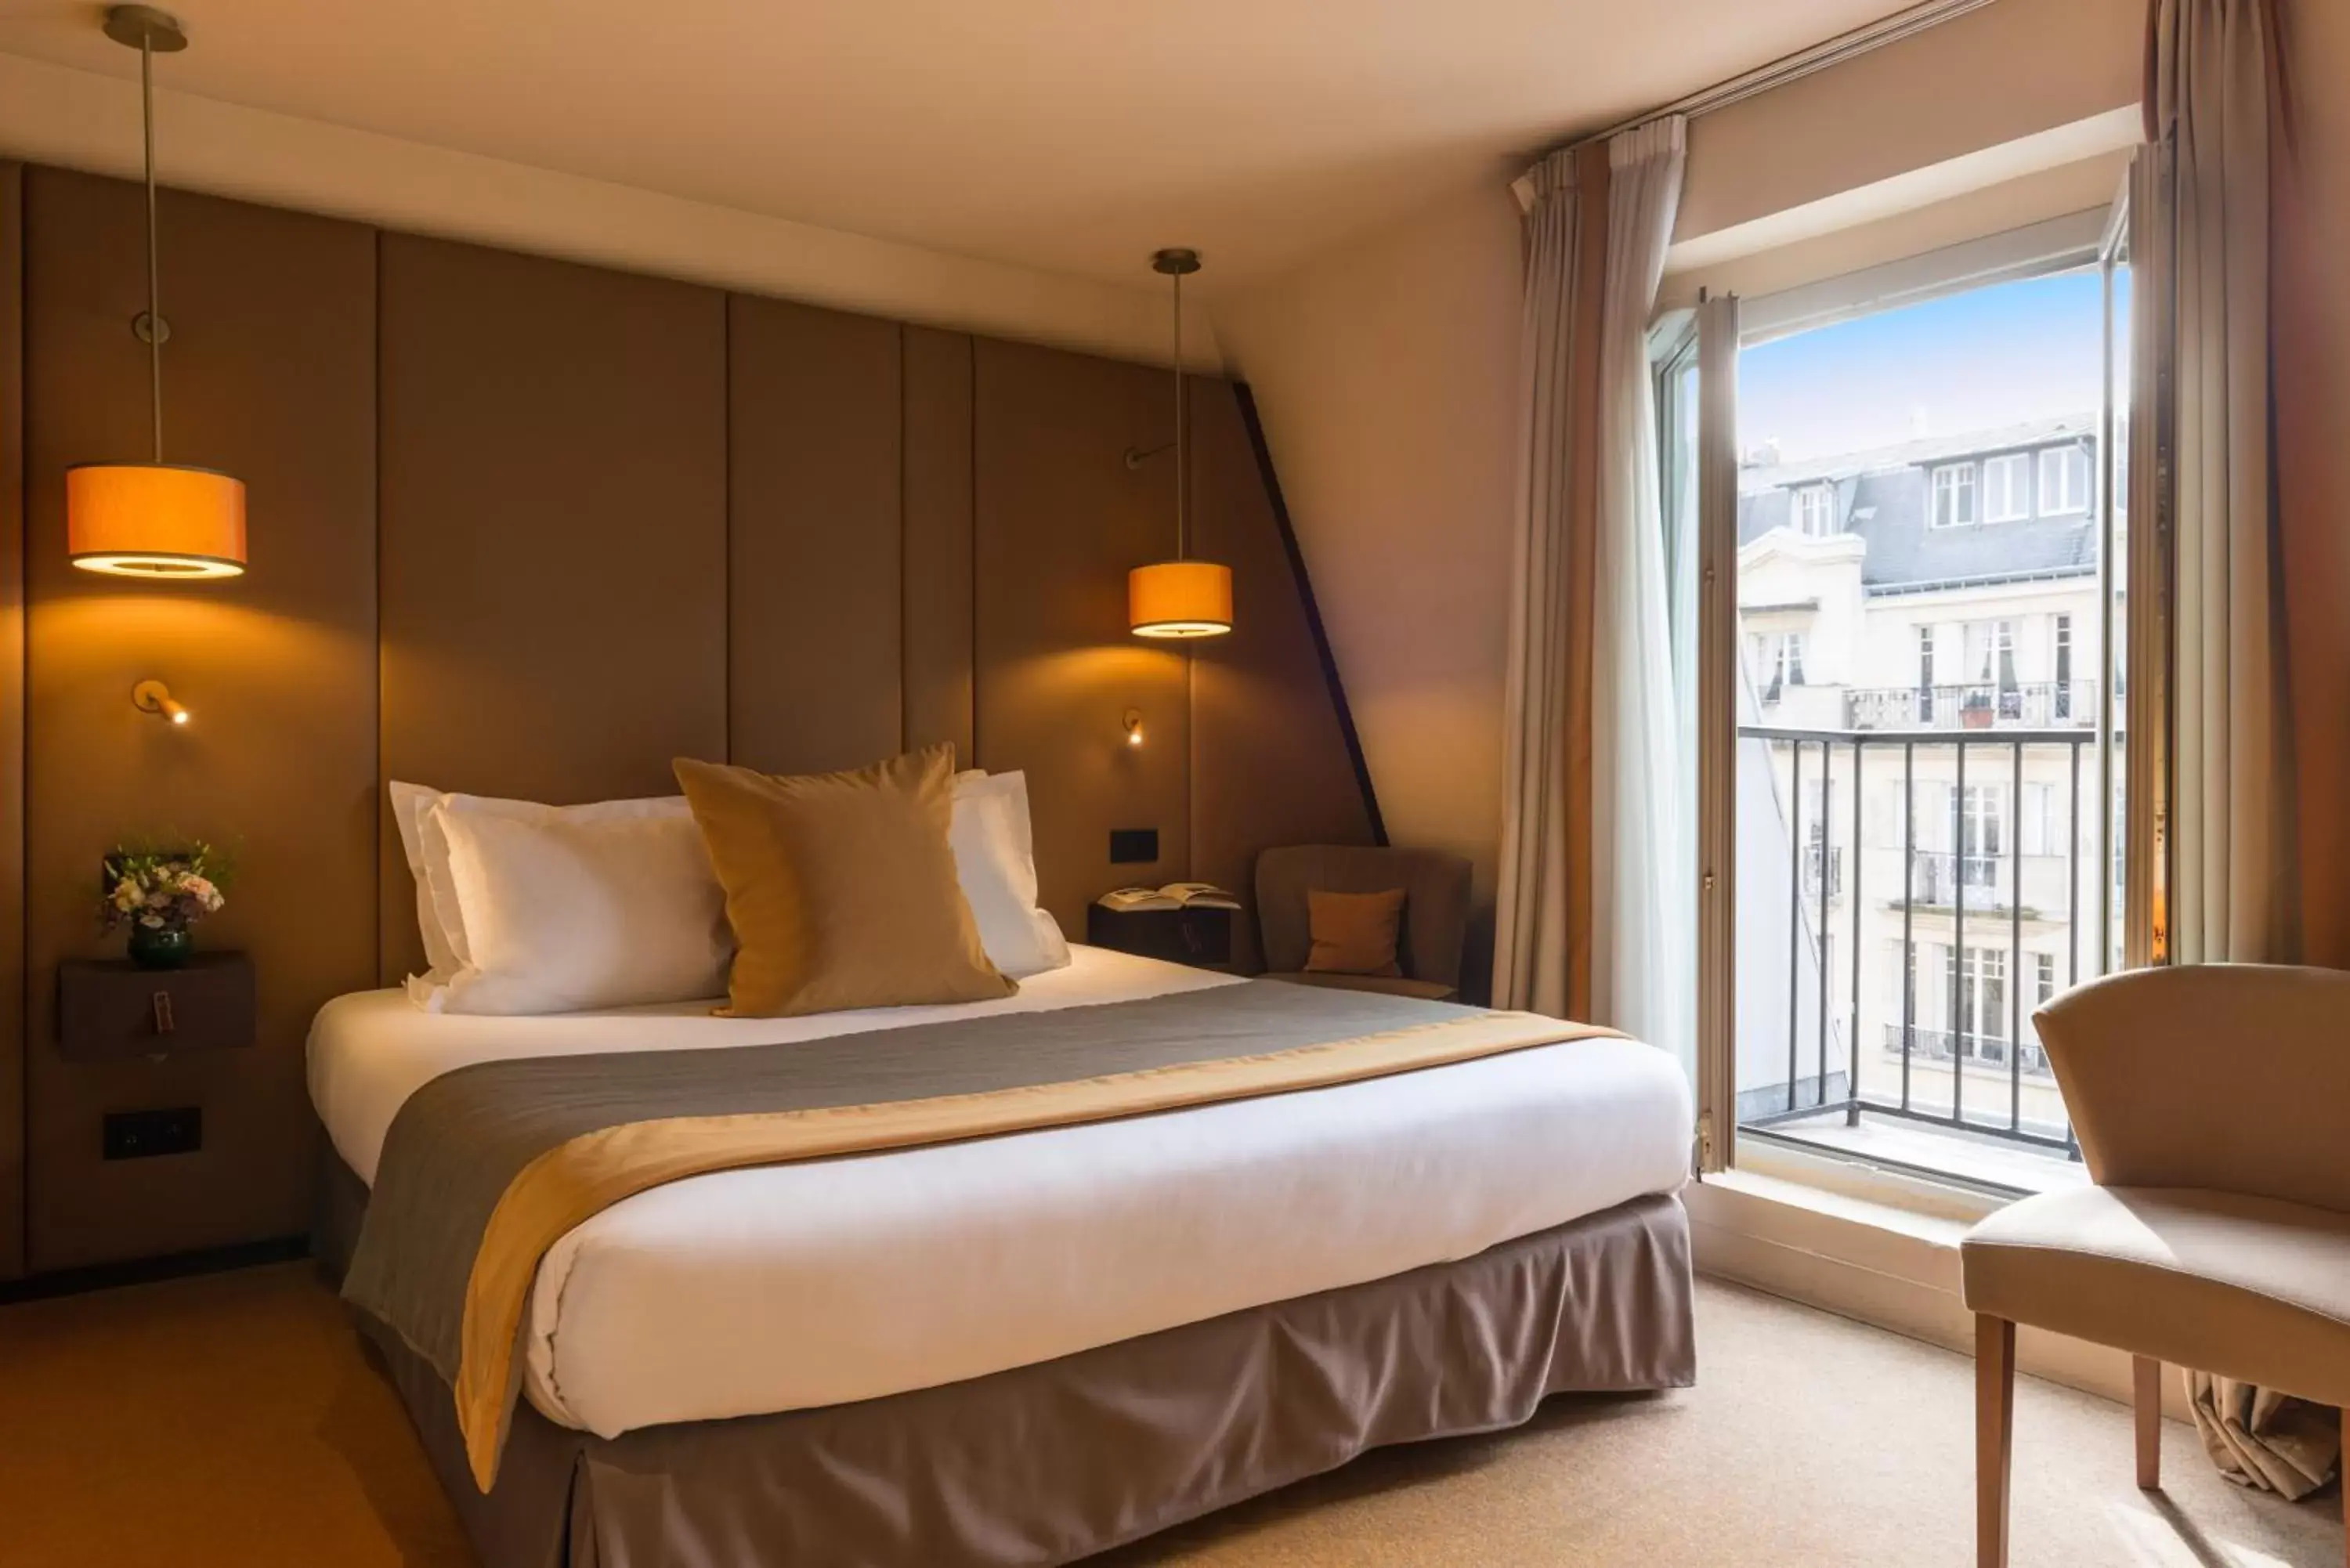 Bed in Hôtel La Bourdonnais by Inwood Hotels